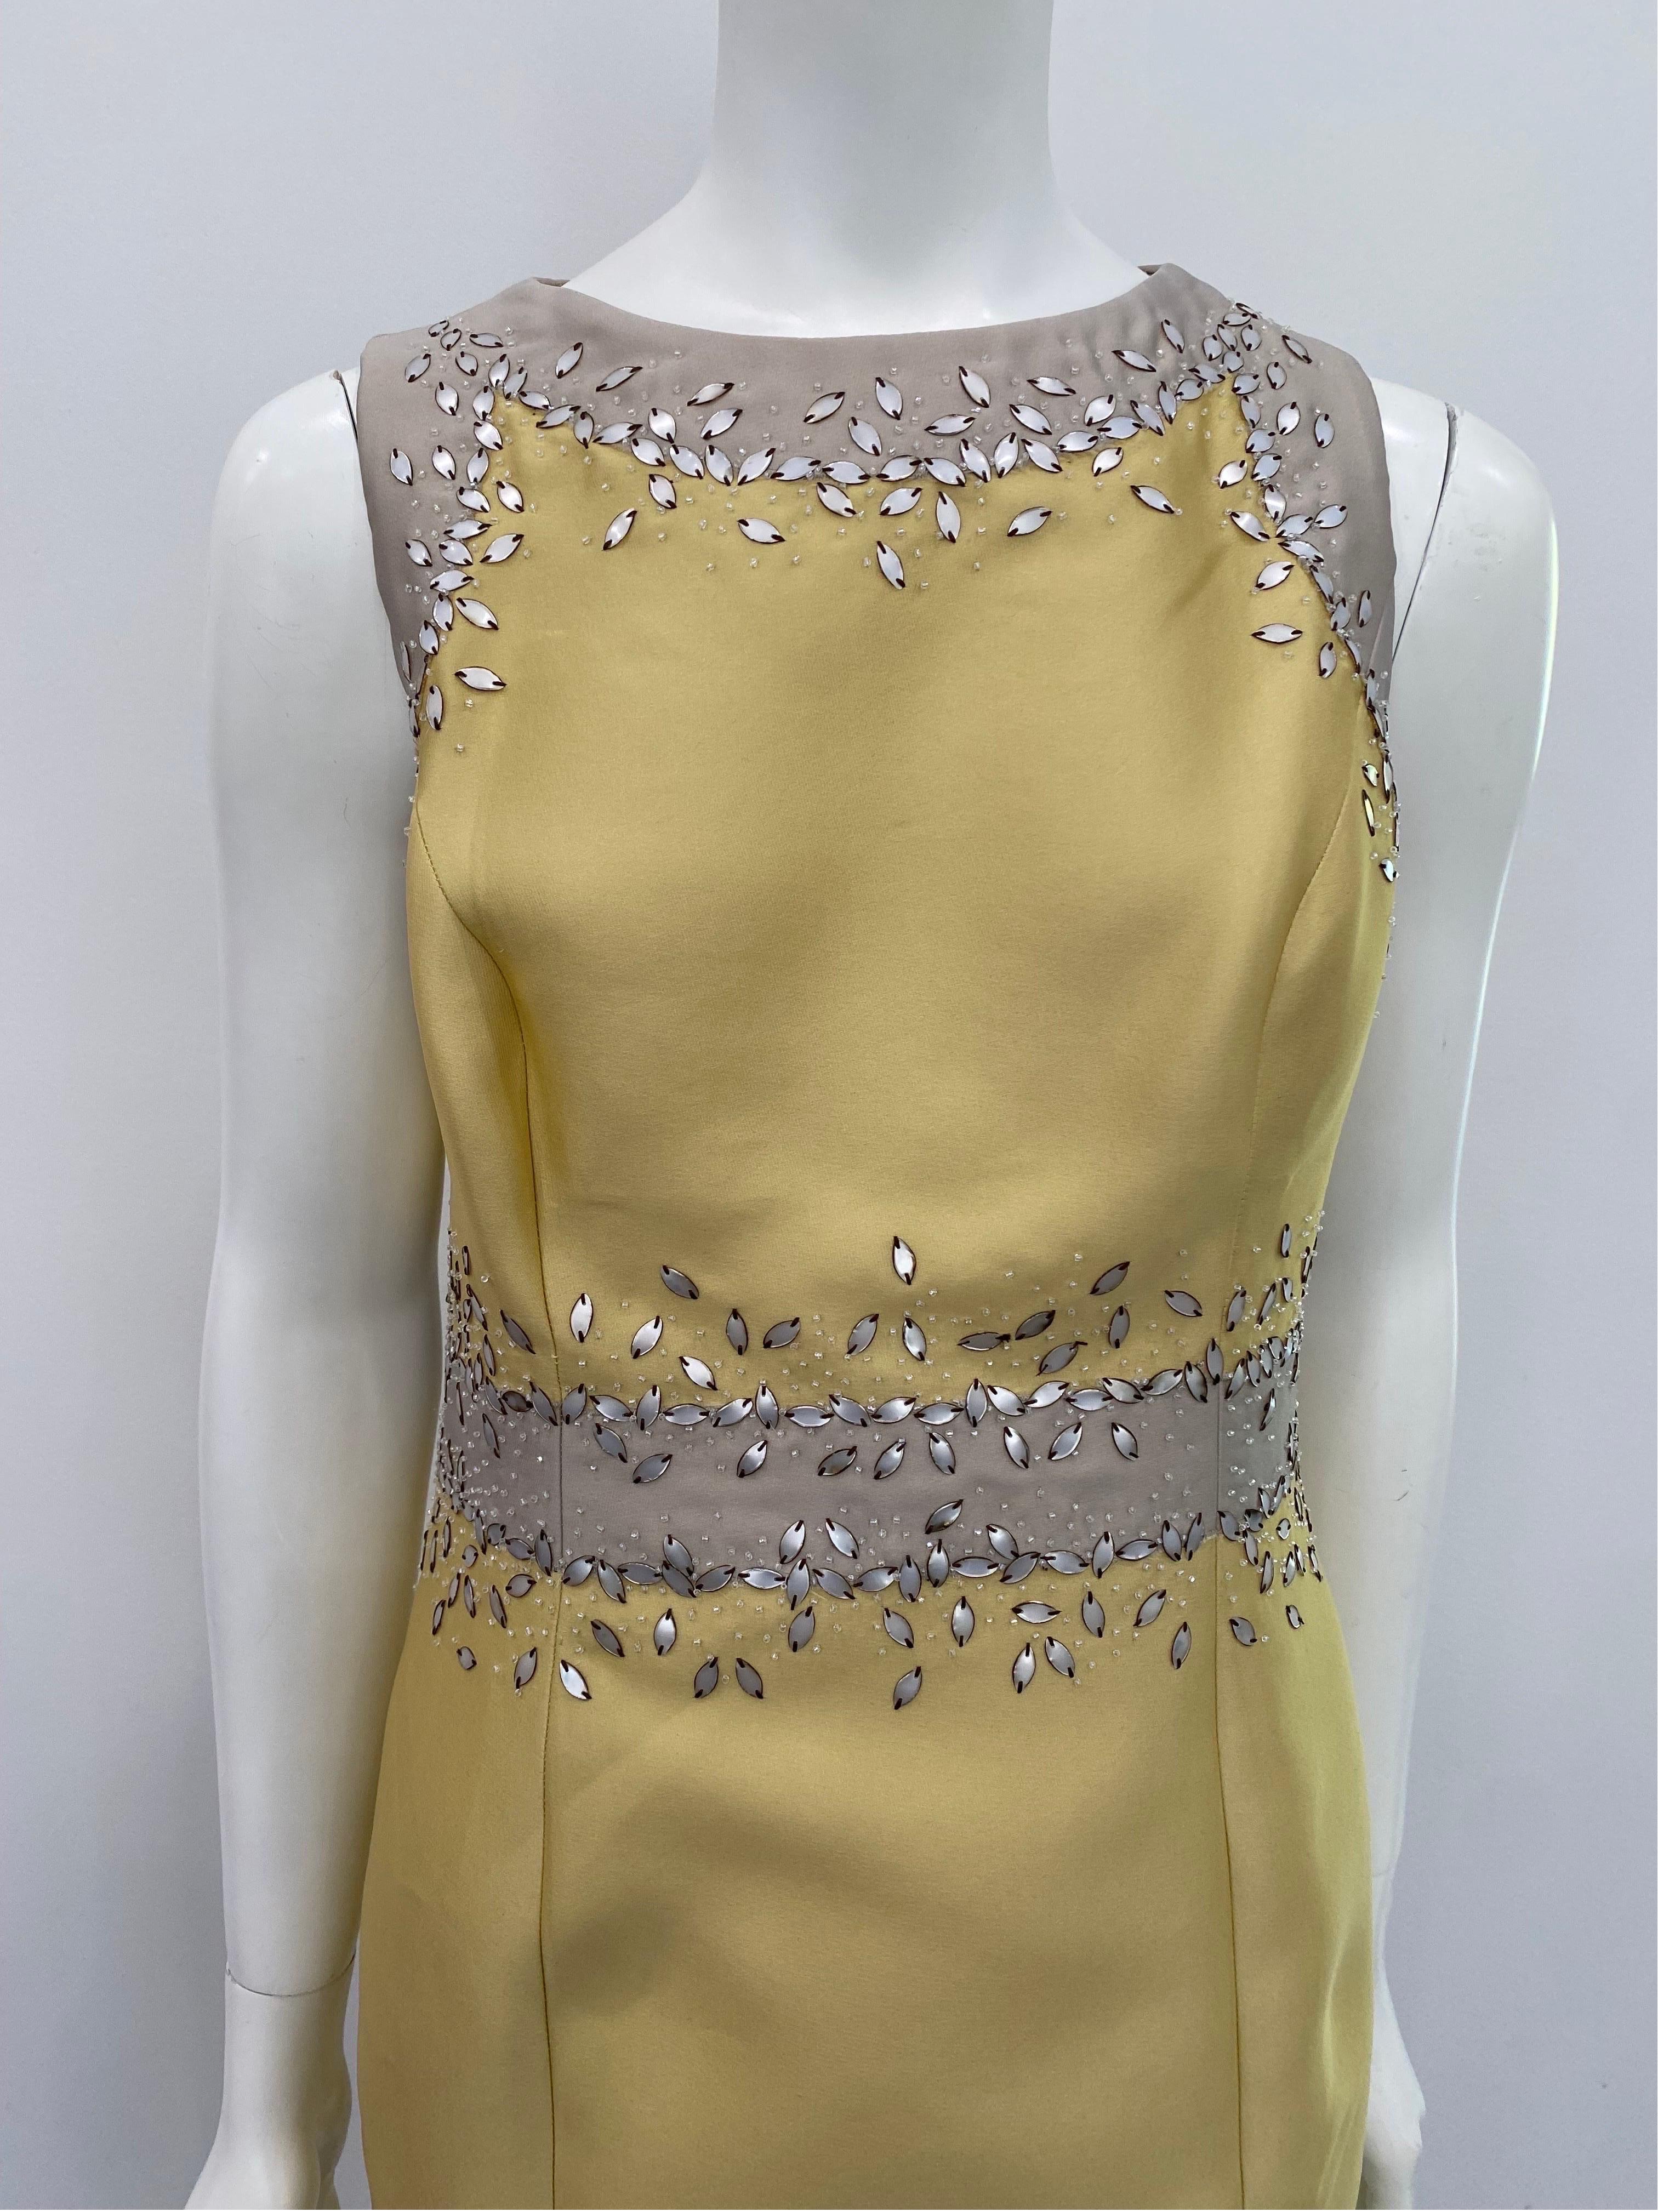 Carolina Herrera Mustard Beaded Silk Sleeveless Dress with Jacket- Sz 10 6